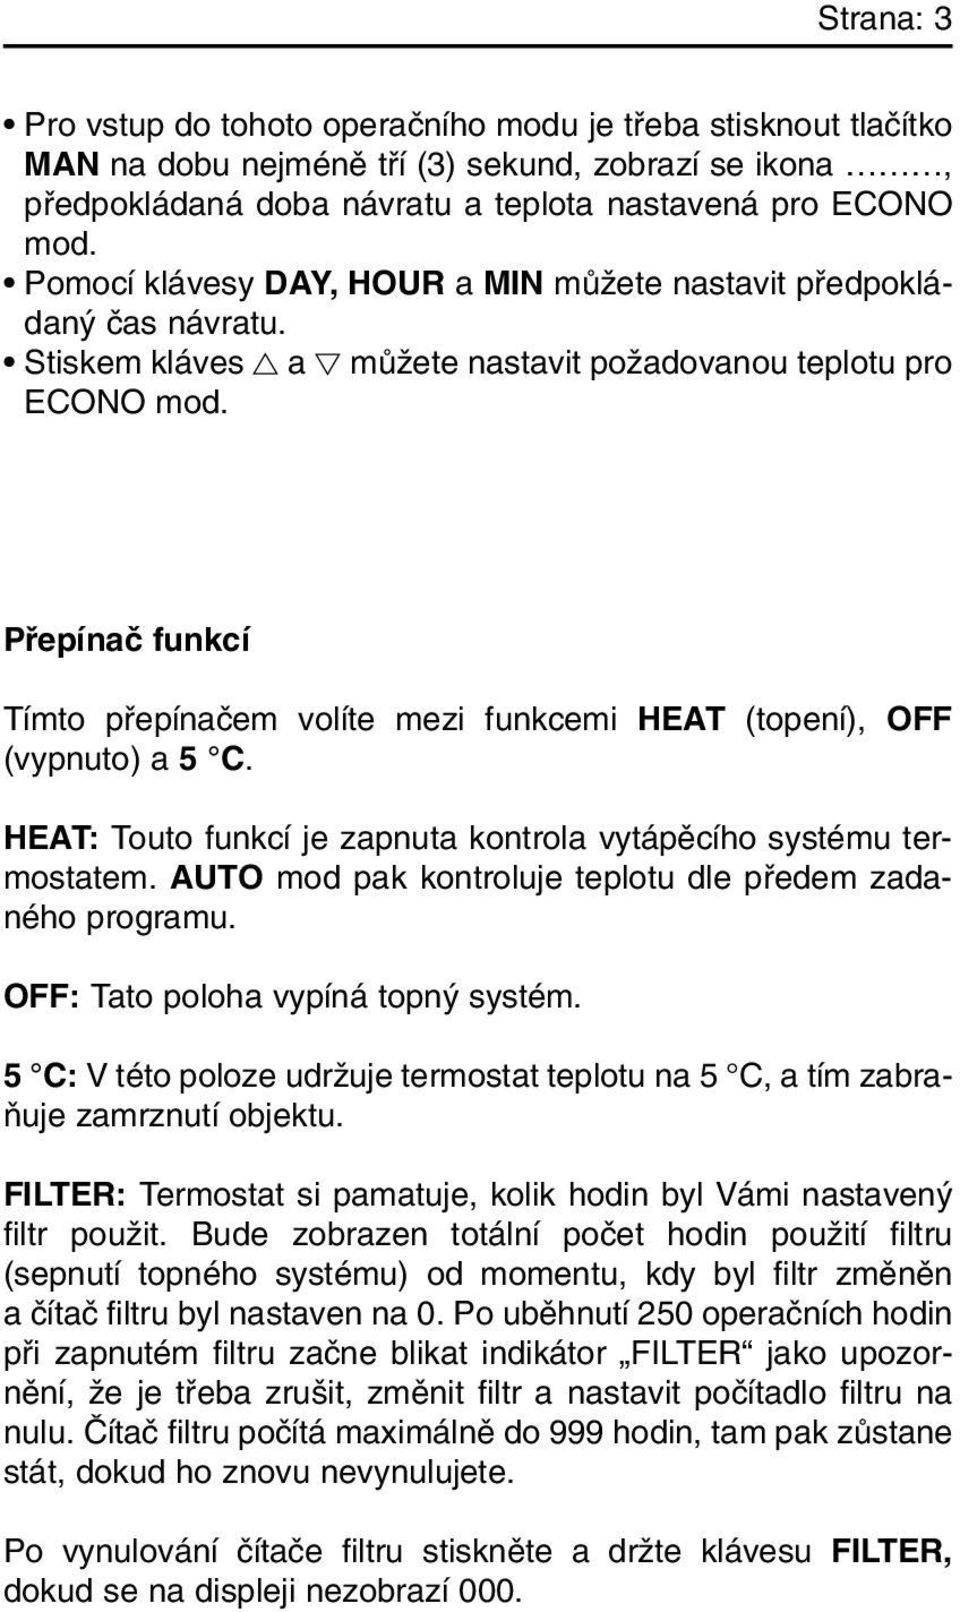 Pfiepínaã funkcí Tímto pfiepínaãem volíte mezi funkcemi HEAT (topení), OFF (vypnuto) a 5 C. HEAT: Touto funkcí je zapnuta kontrola vytápûcího systému termostatem.